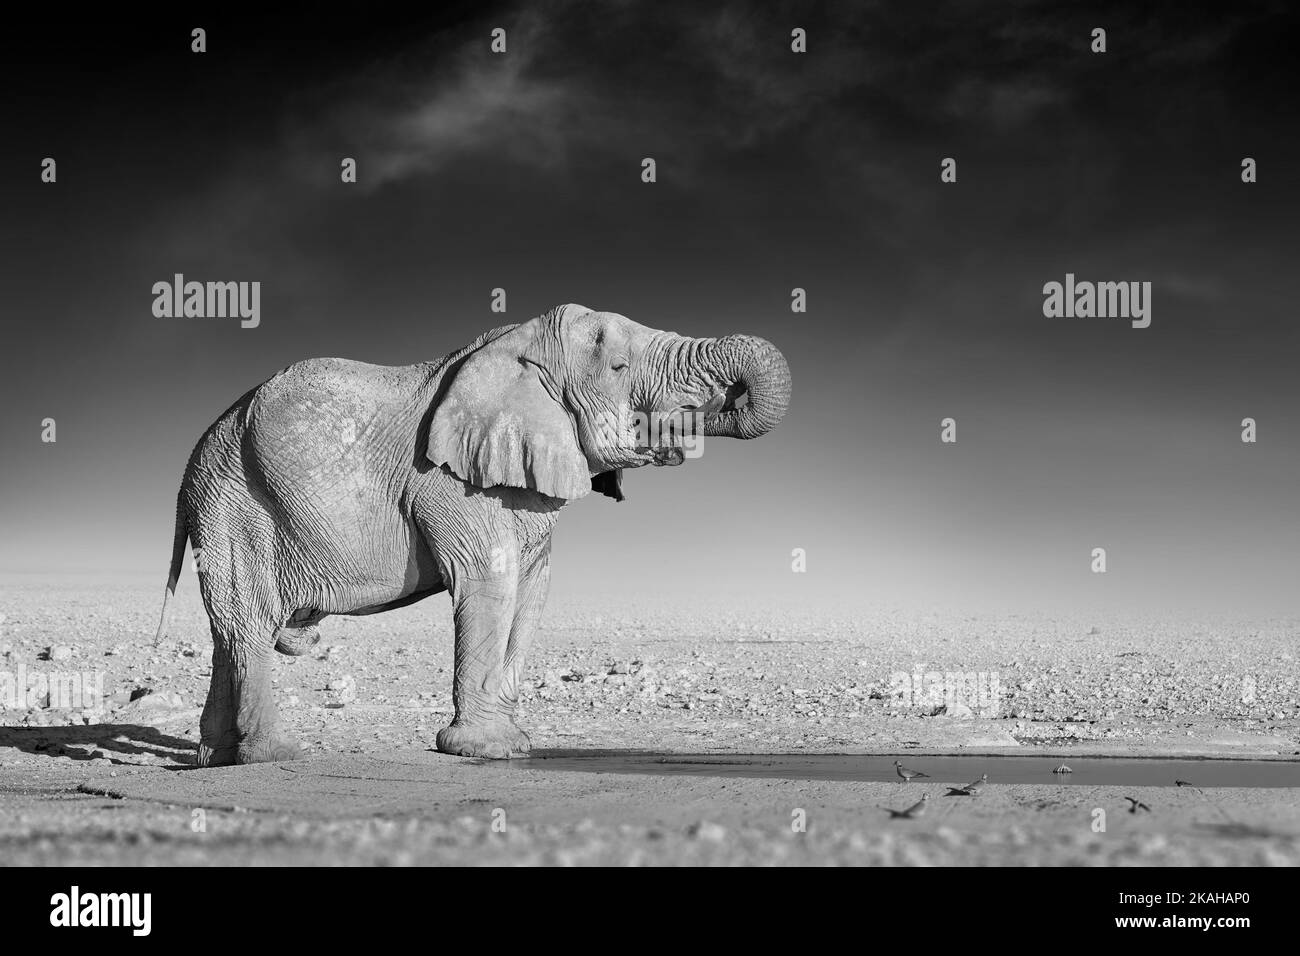 Beaux-arts, photo en noir et blanc d'un éléphant d'afrique sur fond sombre, debout sur la rive du bool, tronc risqué, eau potable. N/a Banque D'Images